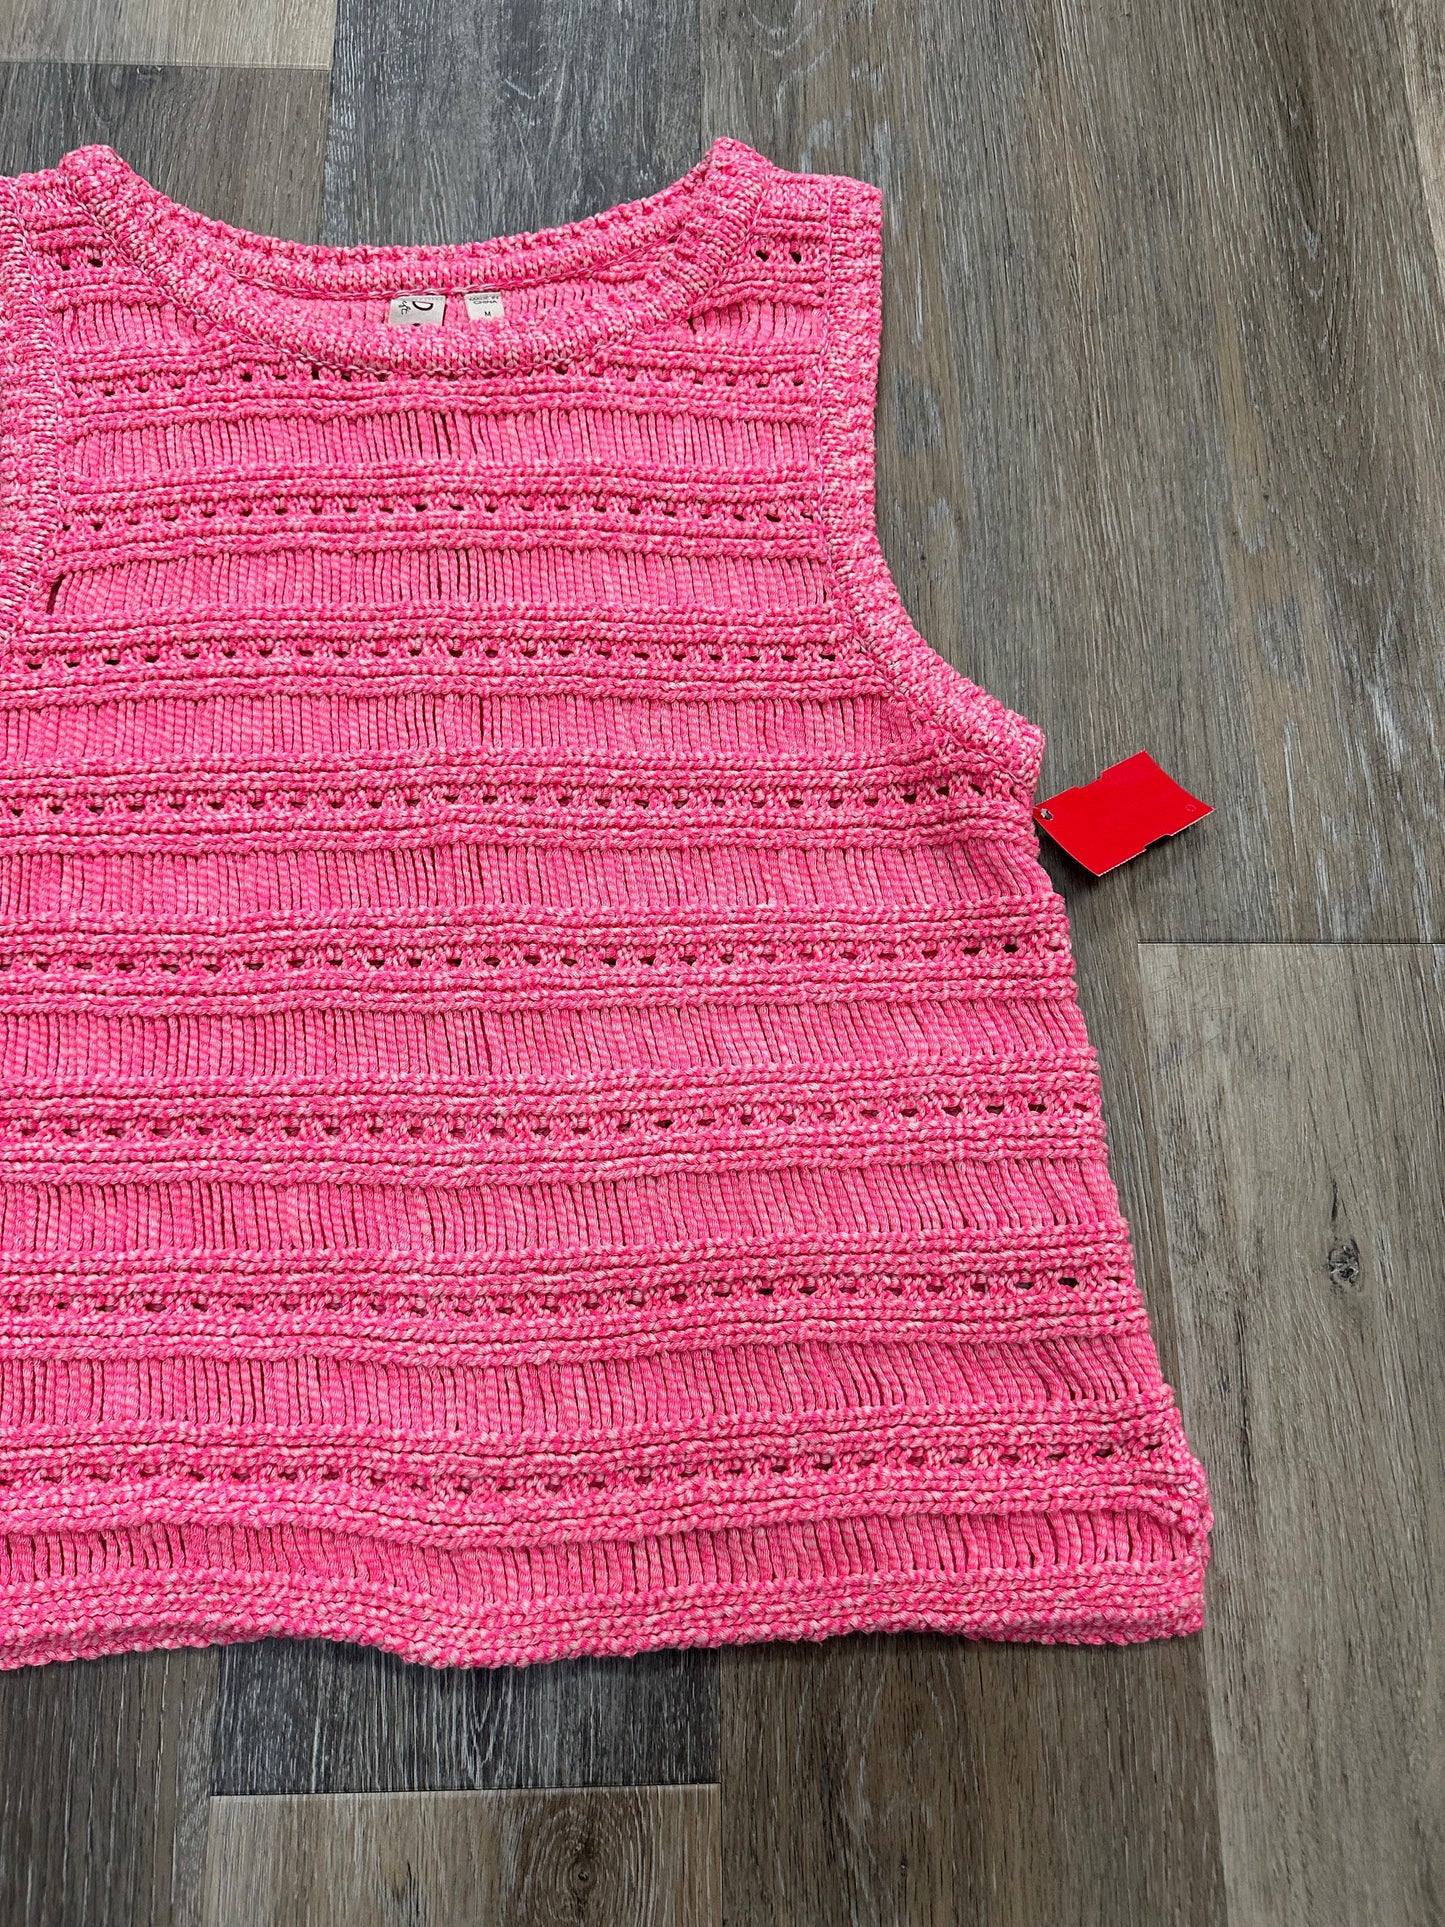 Pink Sweater Short Sleeve Dolan Left Coast, Size M